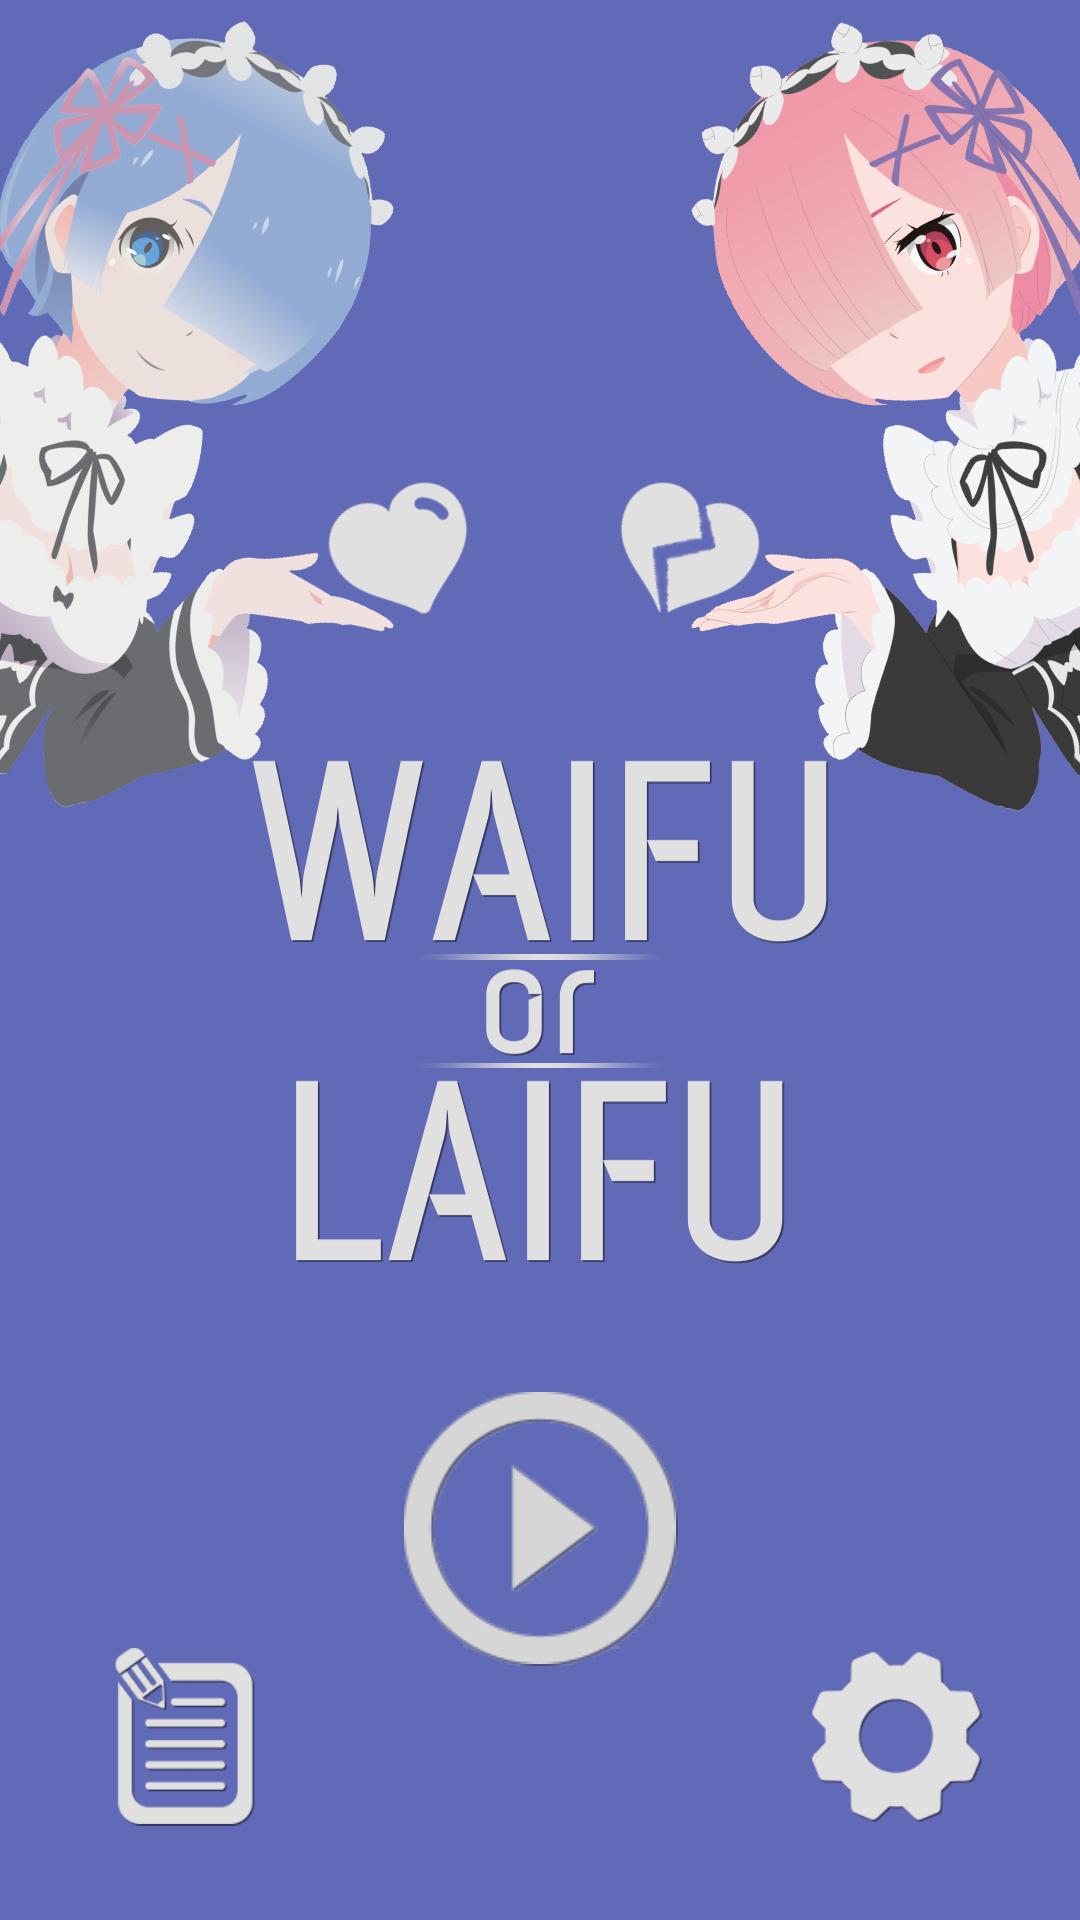 For laifu waifu WaifuForLaifu